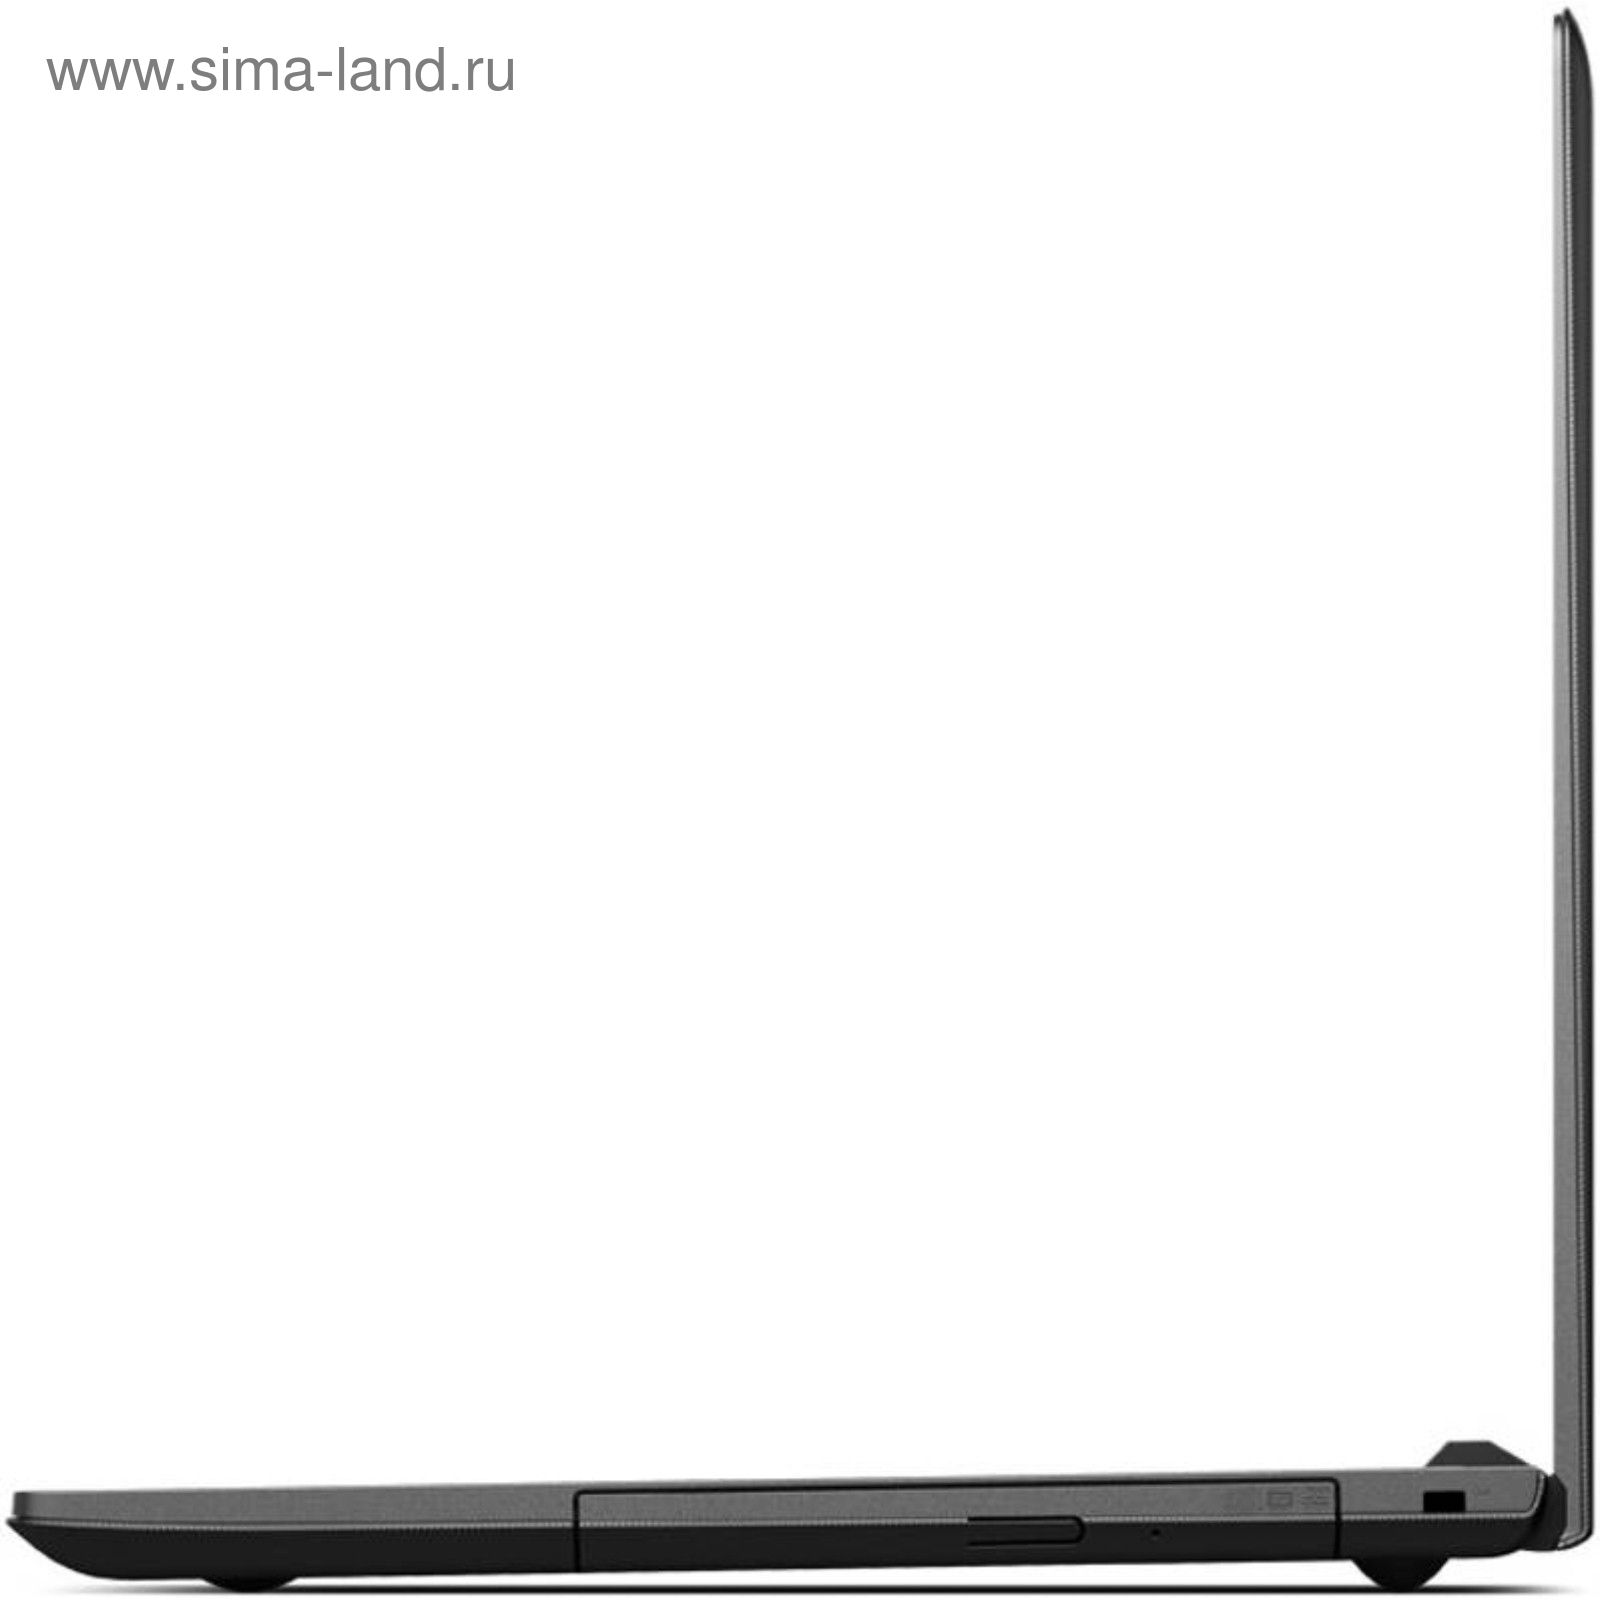 Купить Ноутбук Lenovo Ideapad 100-15ibd 80qq014urk